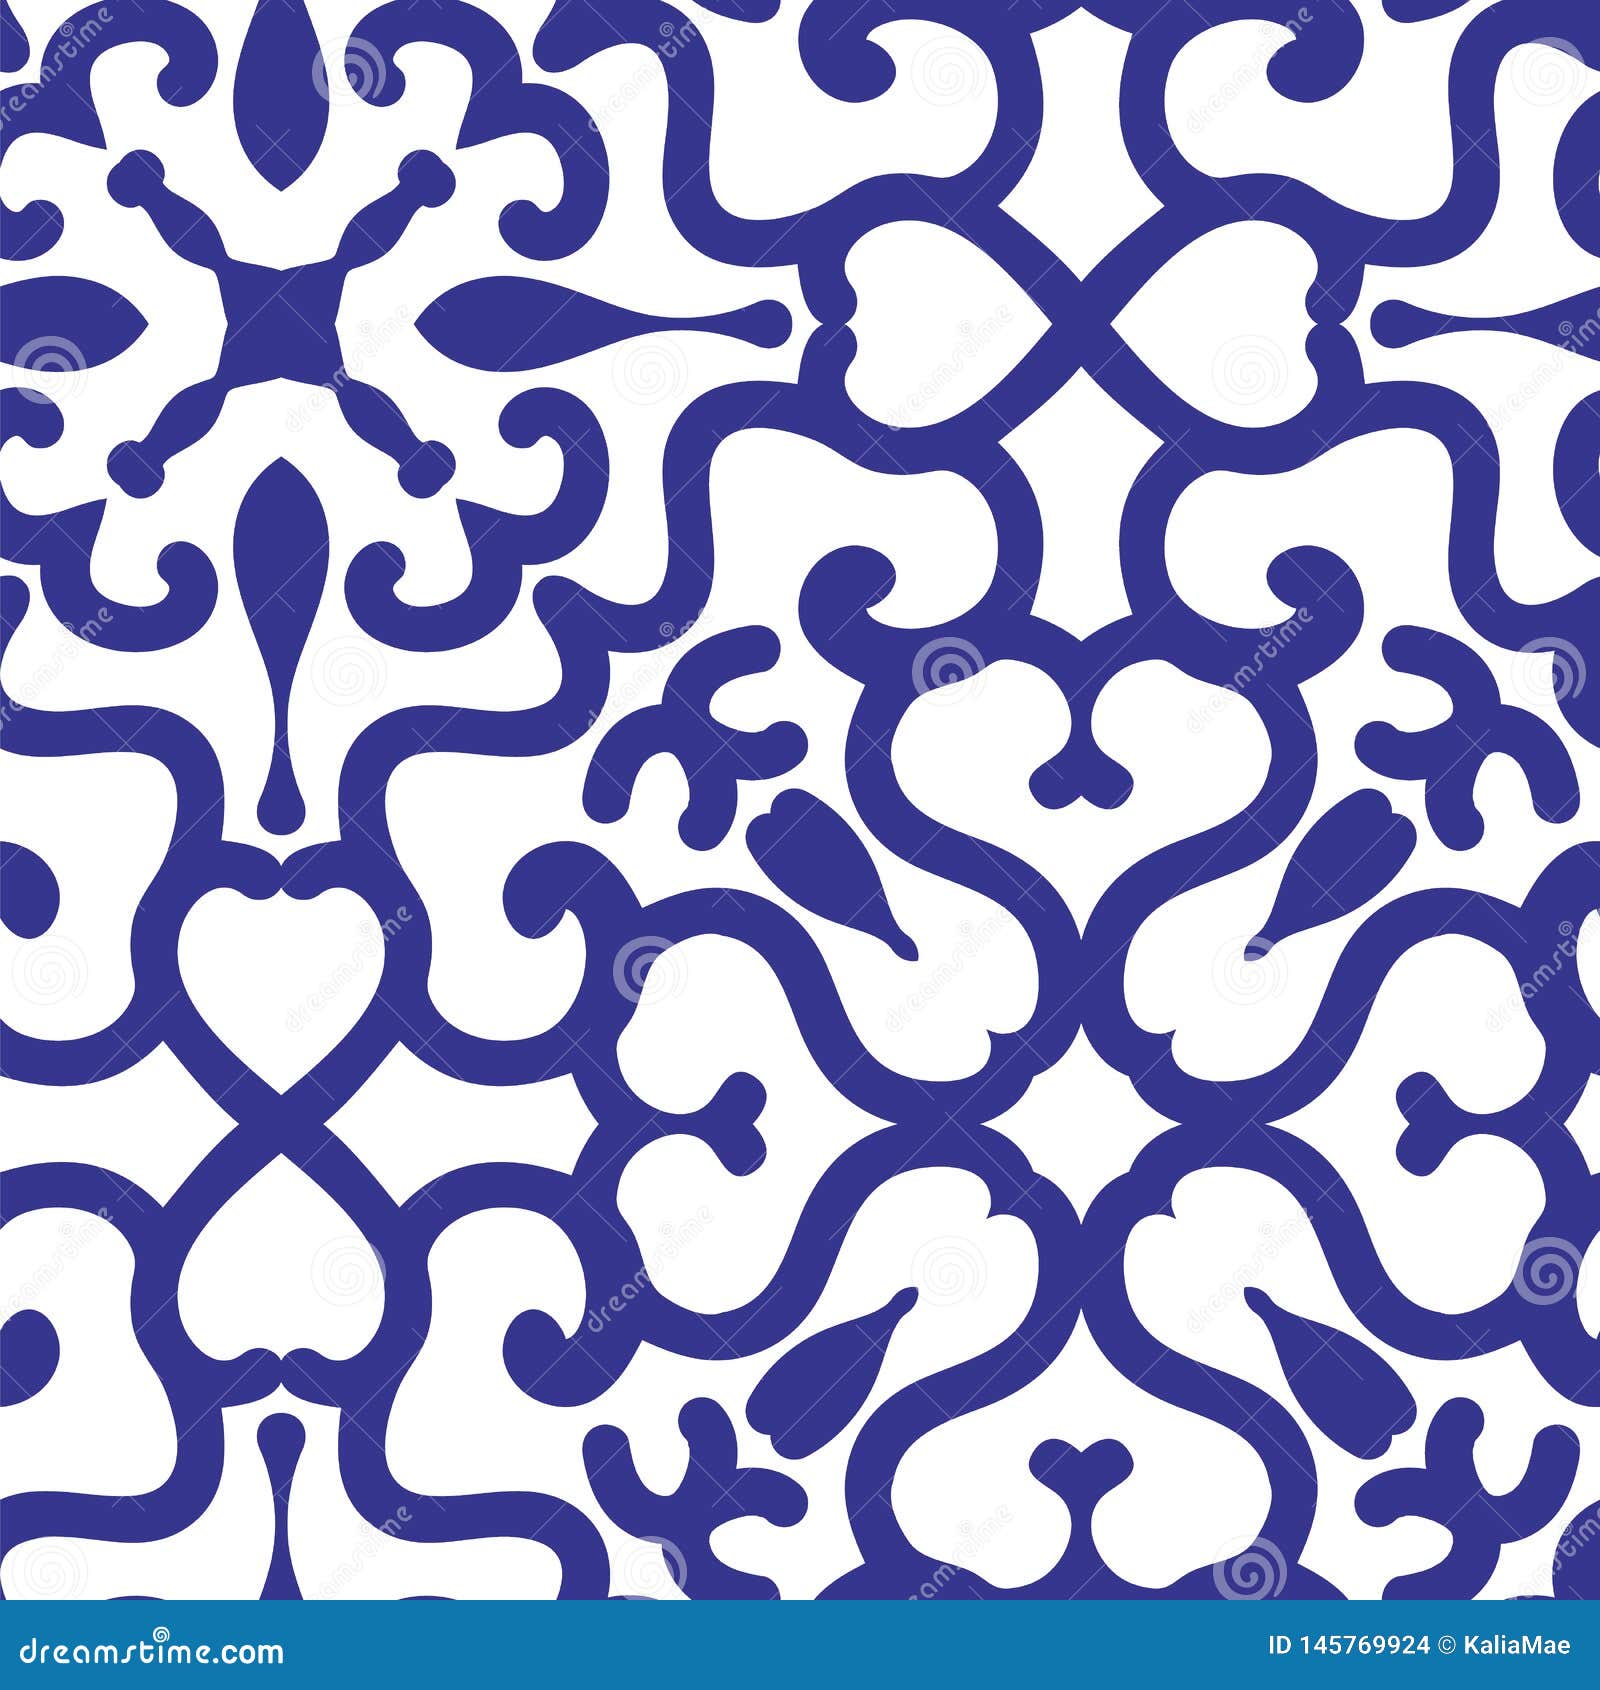 Blue Ornamental Arabesque Tile On White. Fully Editable Seamless Vector Pattern Stock